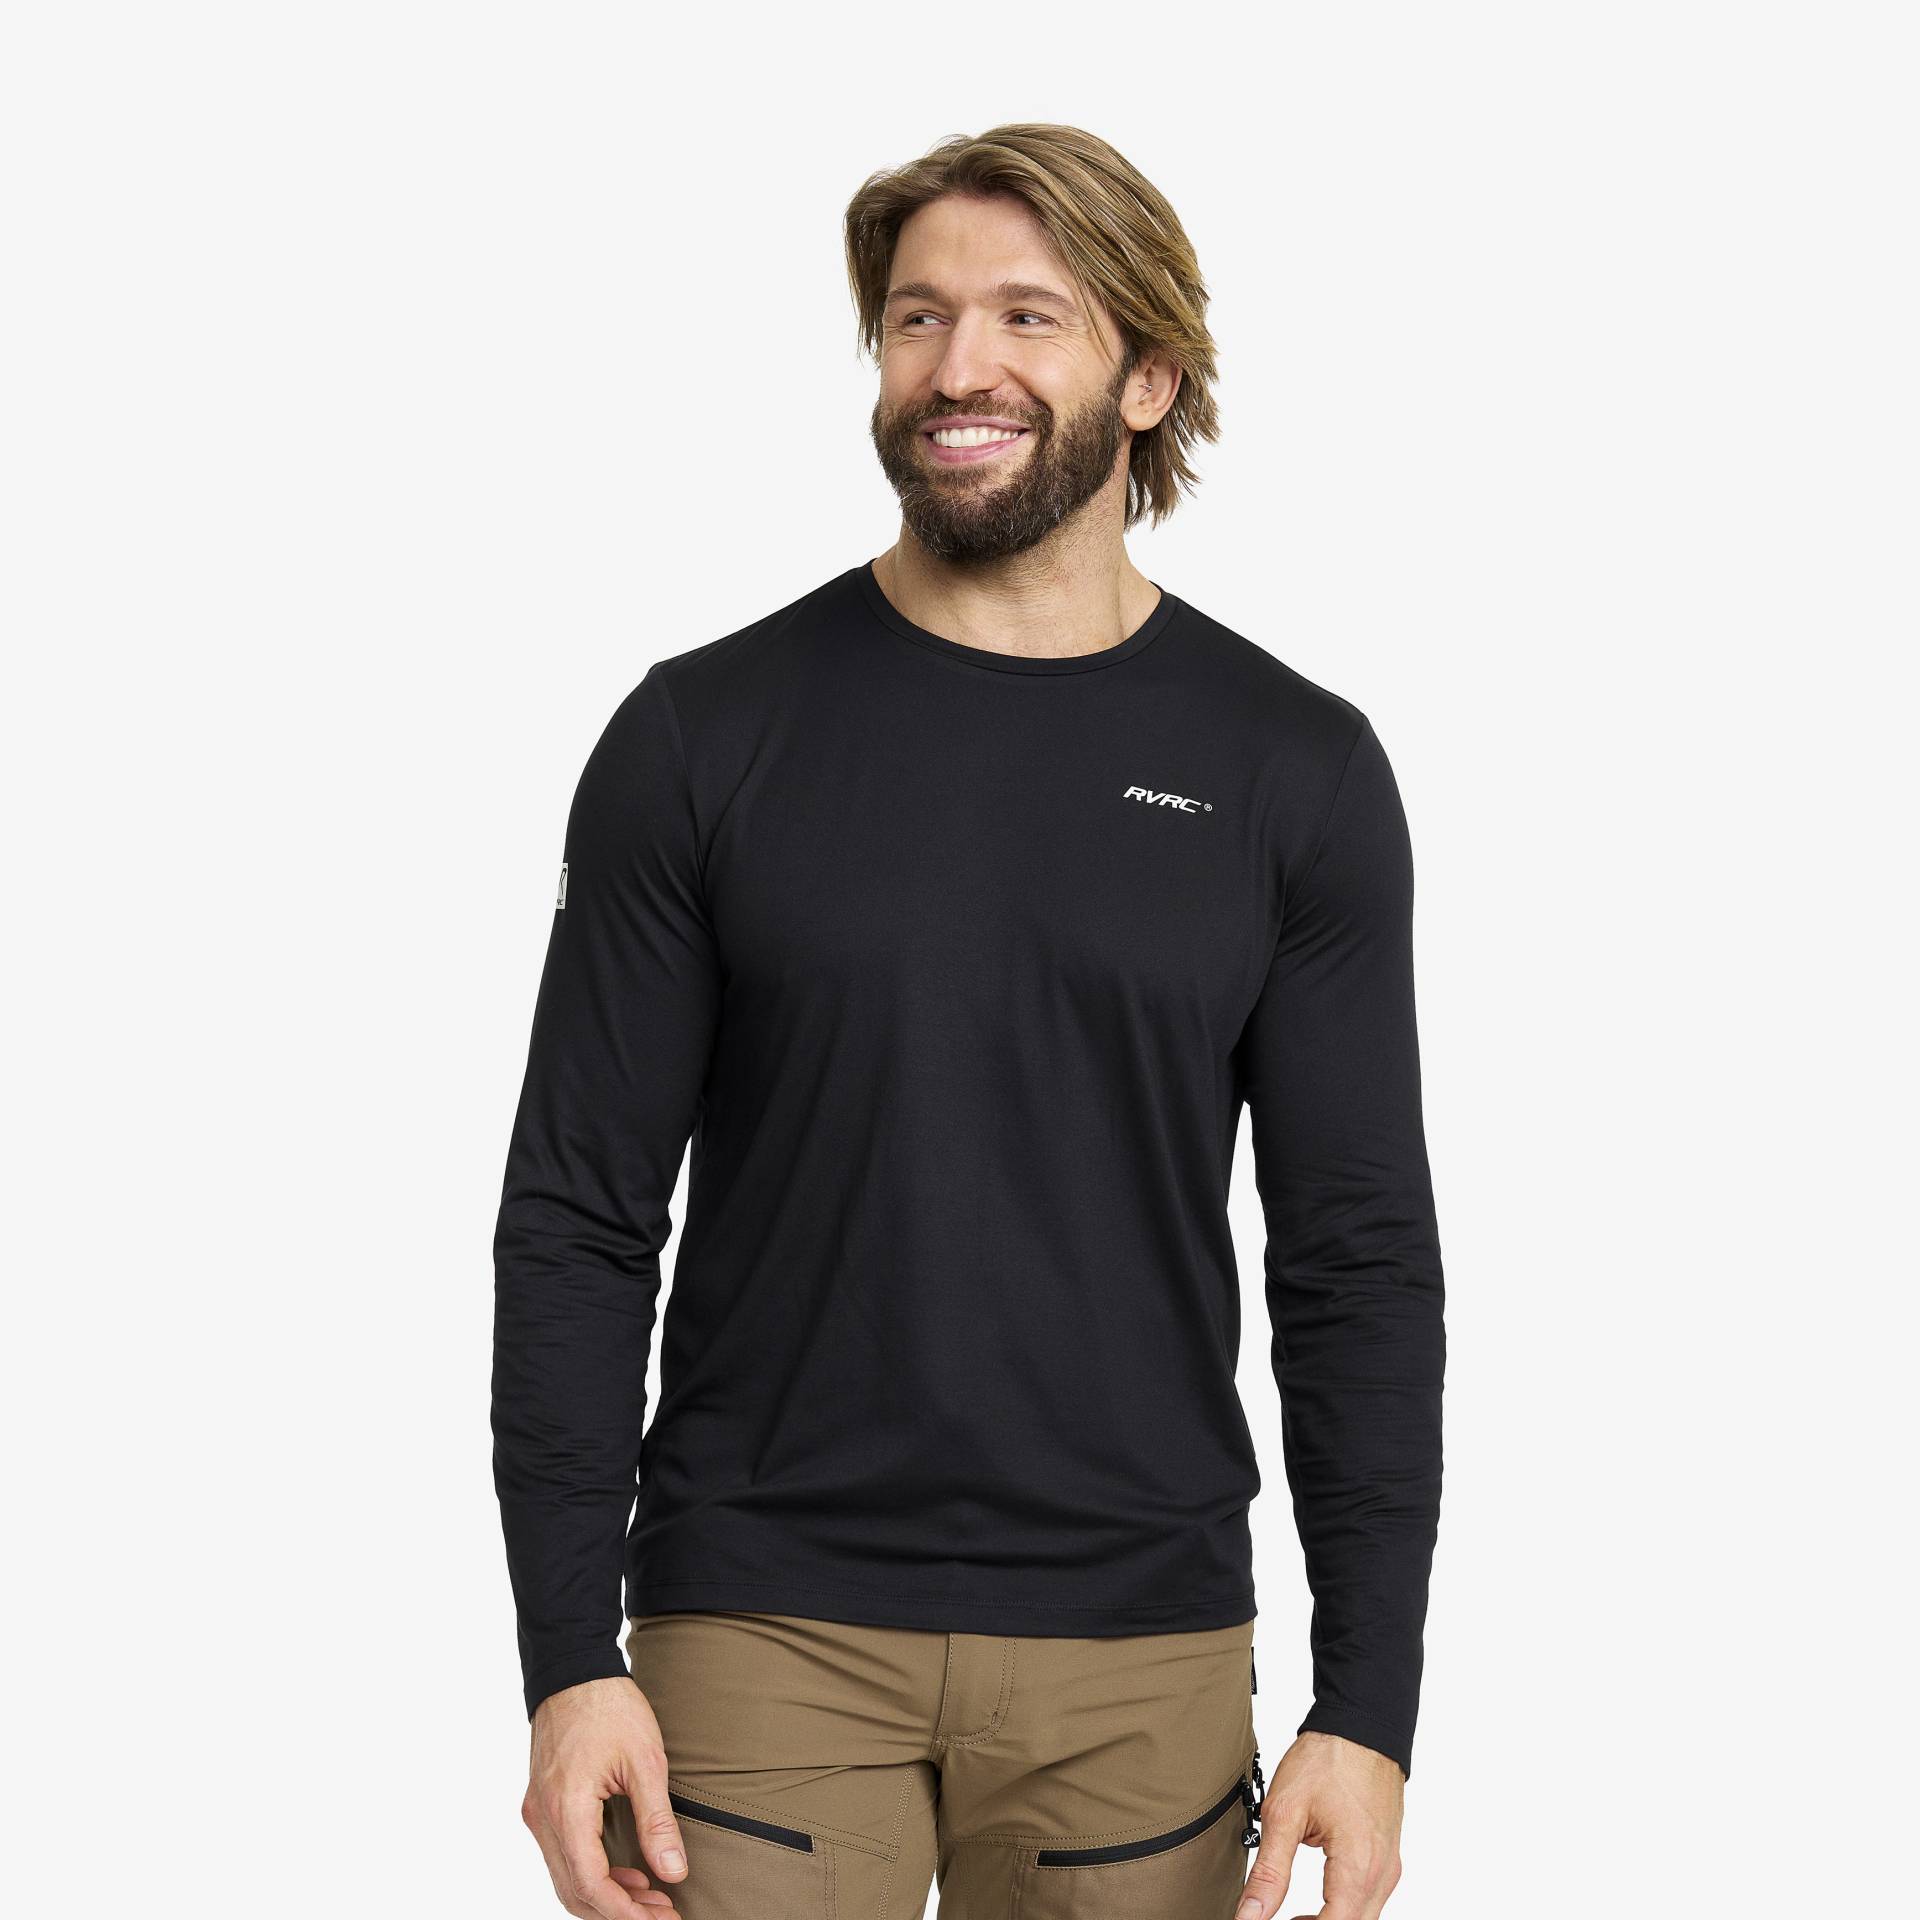 Mission Long-sleeved T-shirt Herren Black, Größe:L - Herren > Oberteile > Hemden & Langarmshirts von RevolutionRace